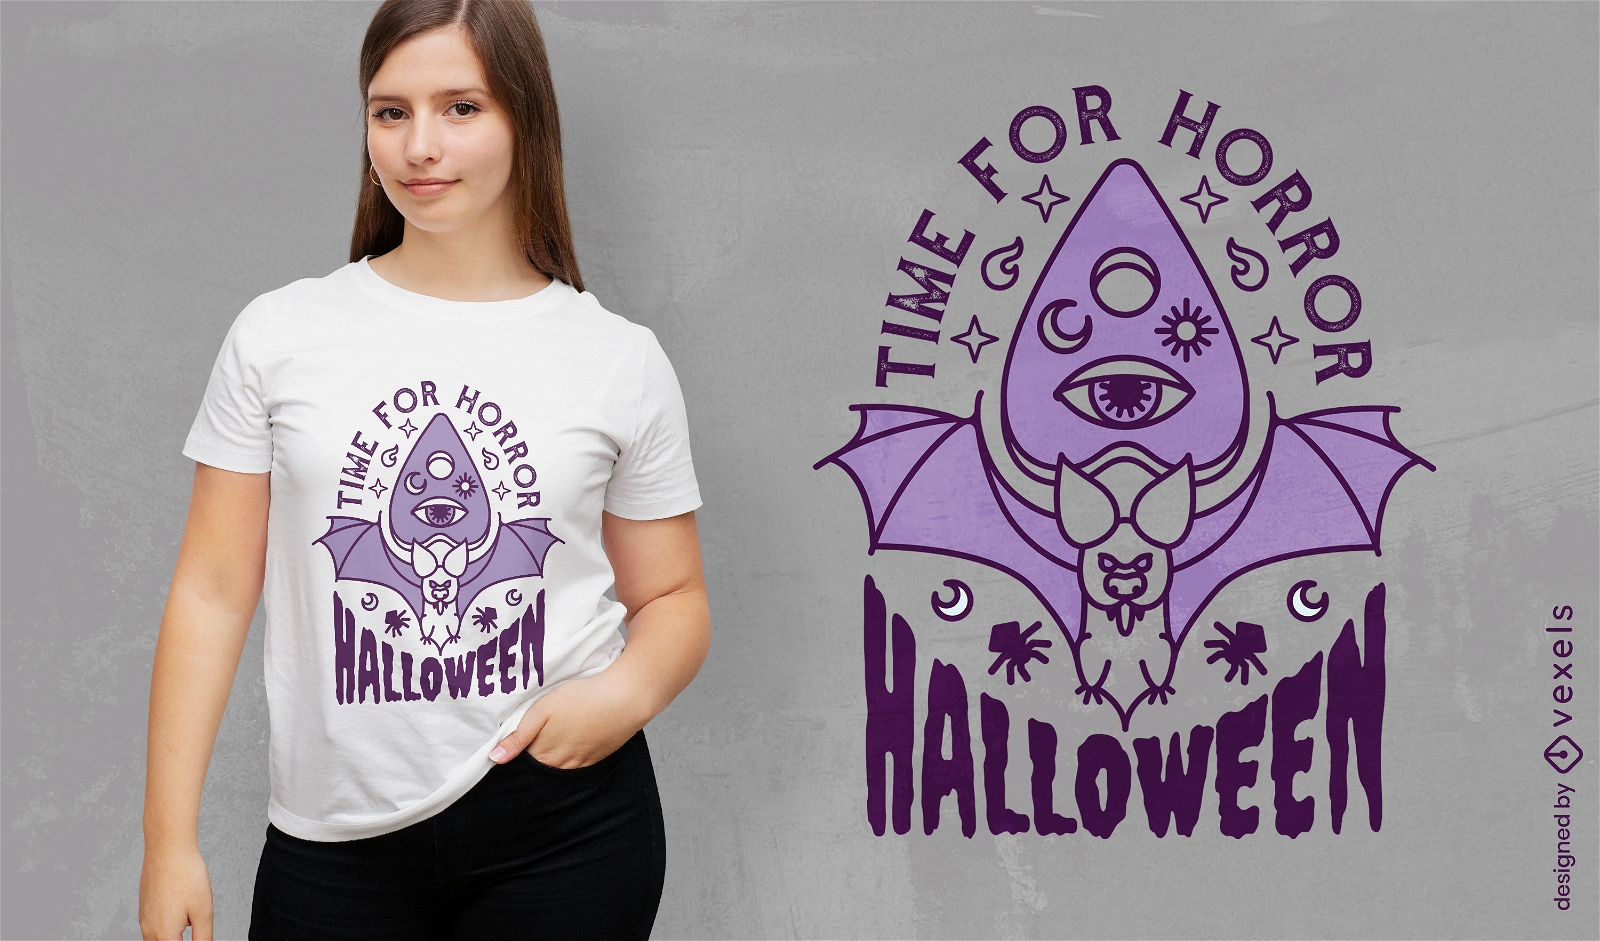 Zeit für Horror-Halloween-Fledermaus-T-Shirt-Design